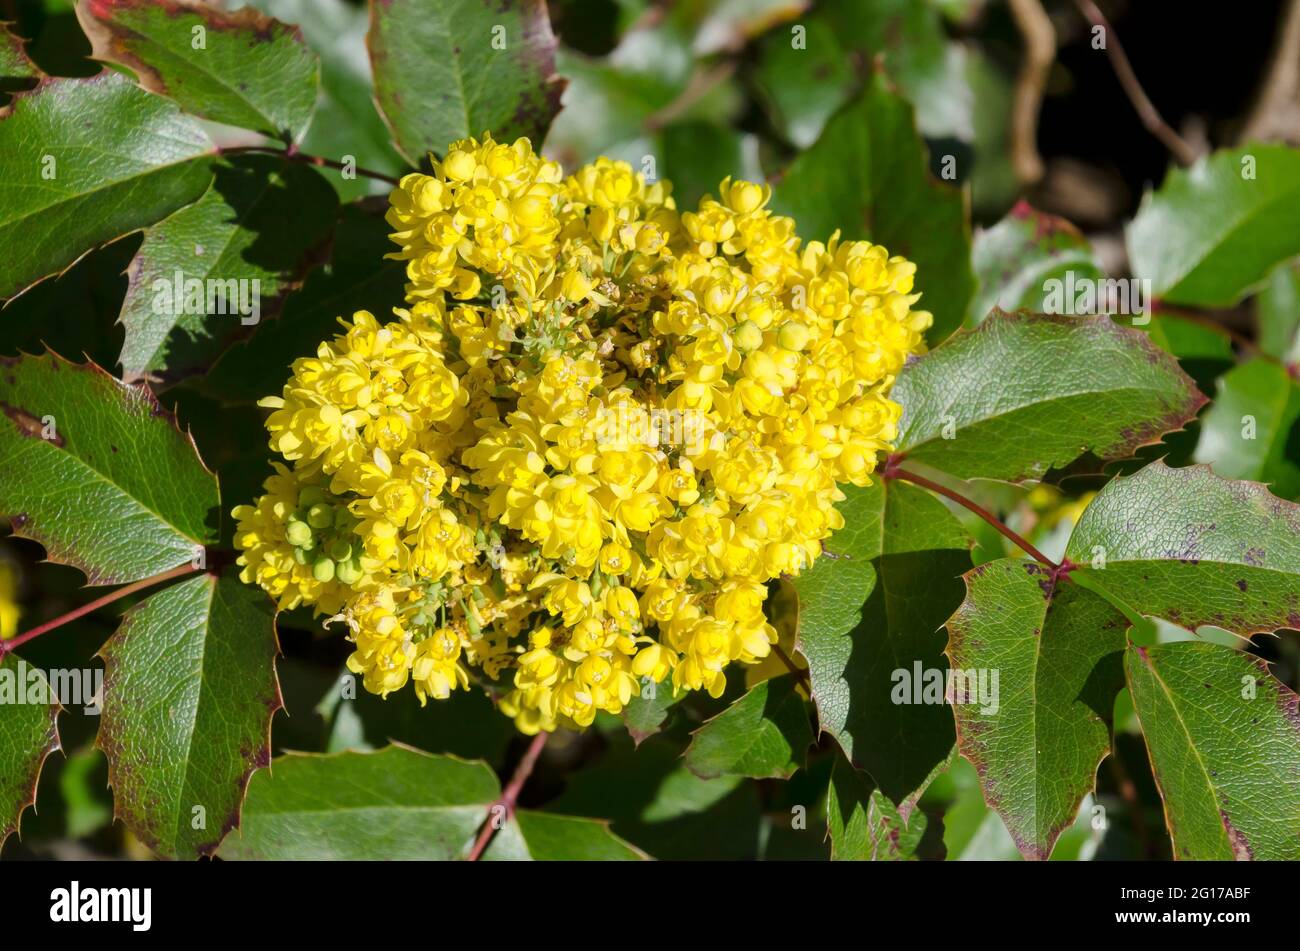 Mahonia aquifolium arbusto con fiore giallo, cespuglio sempreverde con foglie spinose in fiore, Sofia, Bulgaria Foto Stock